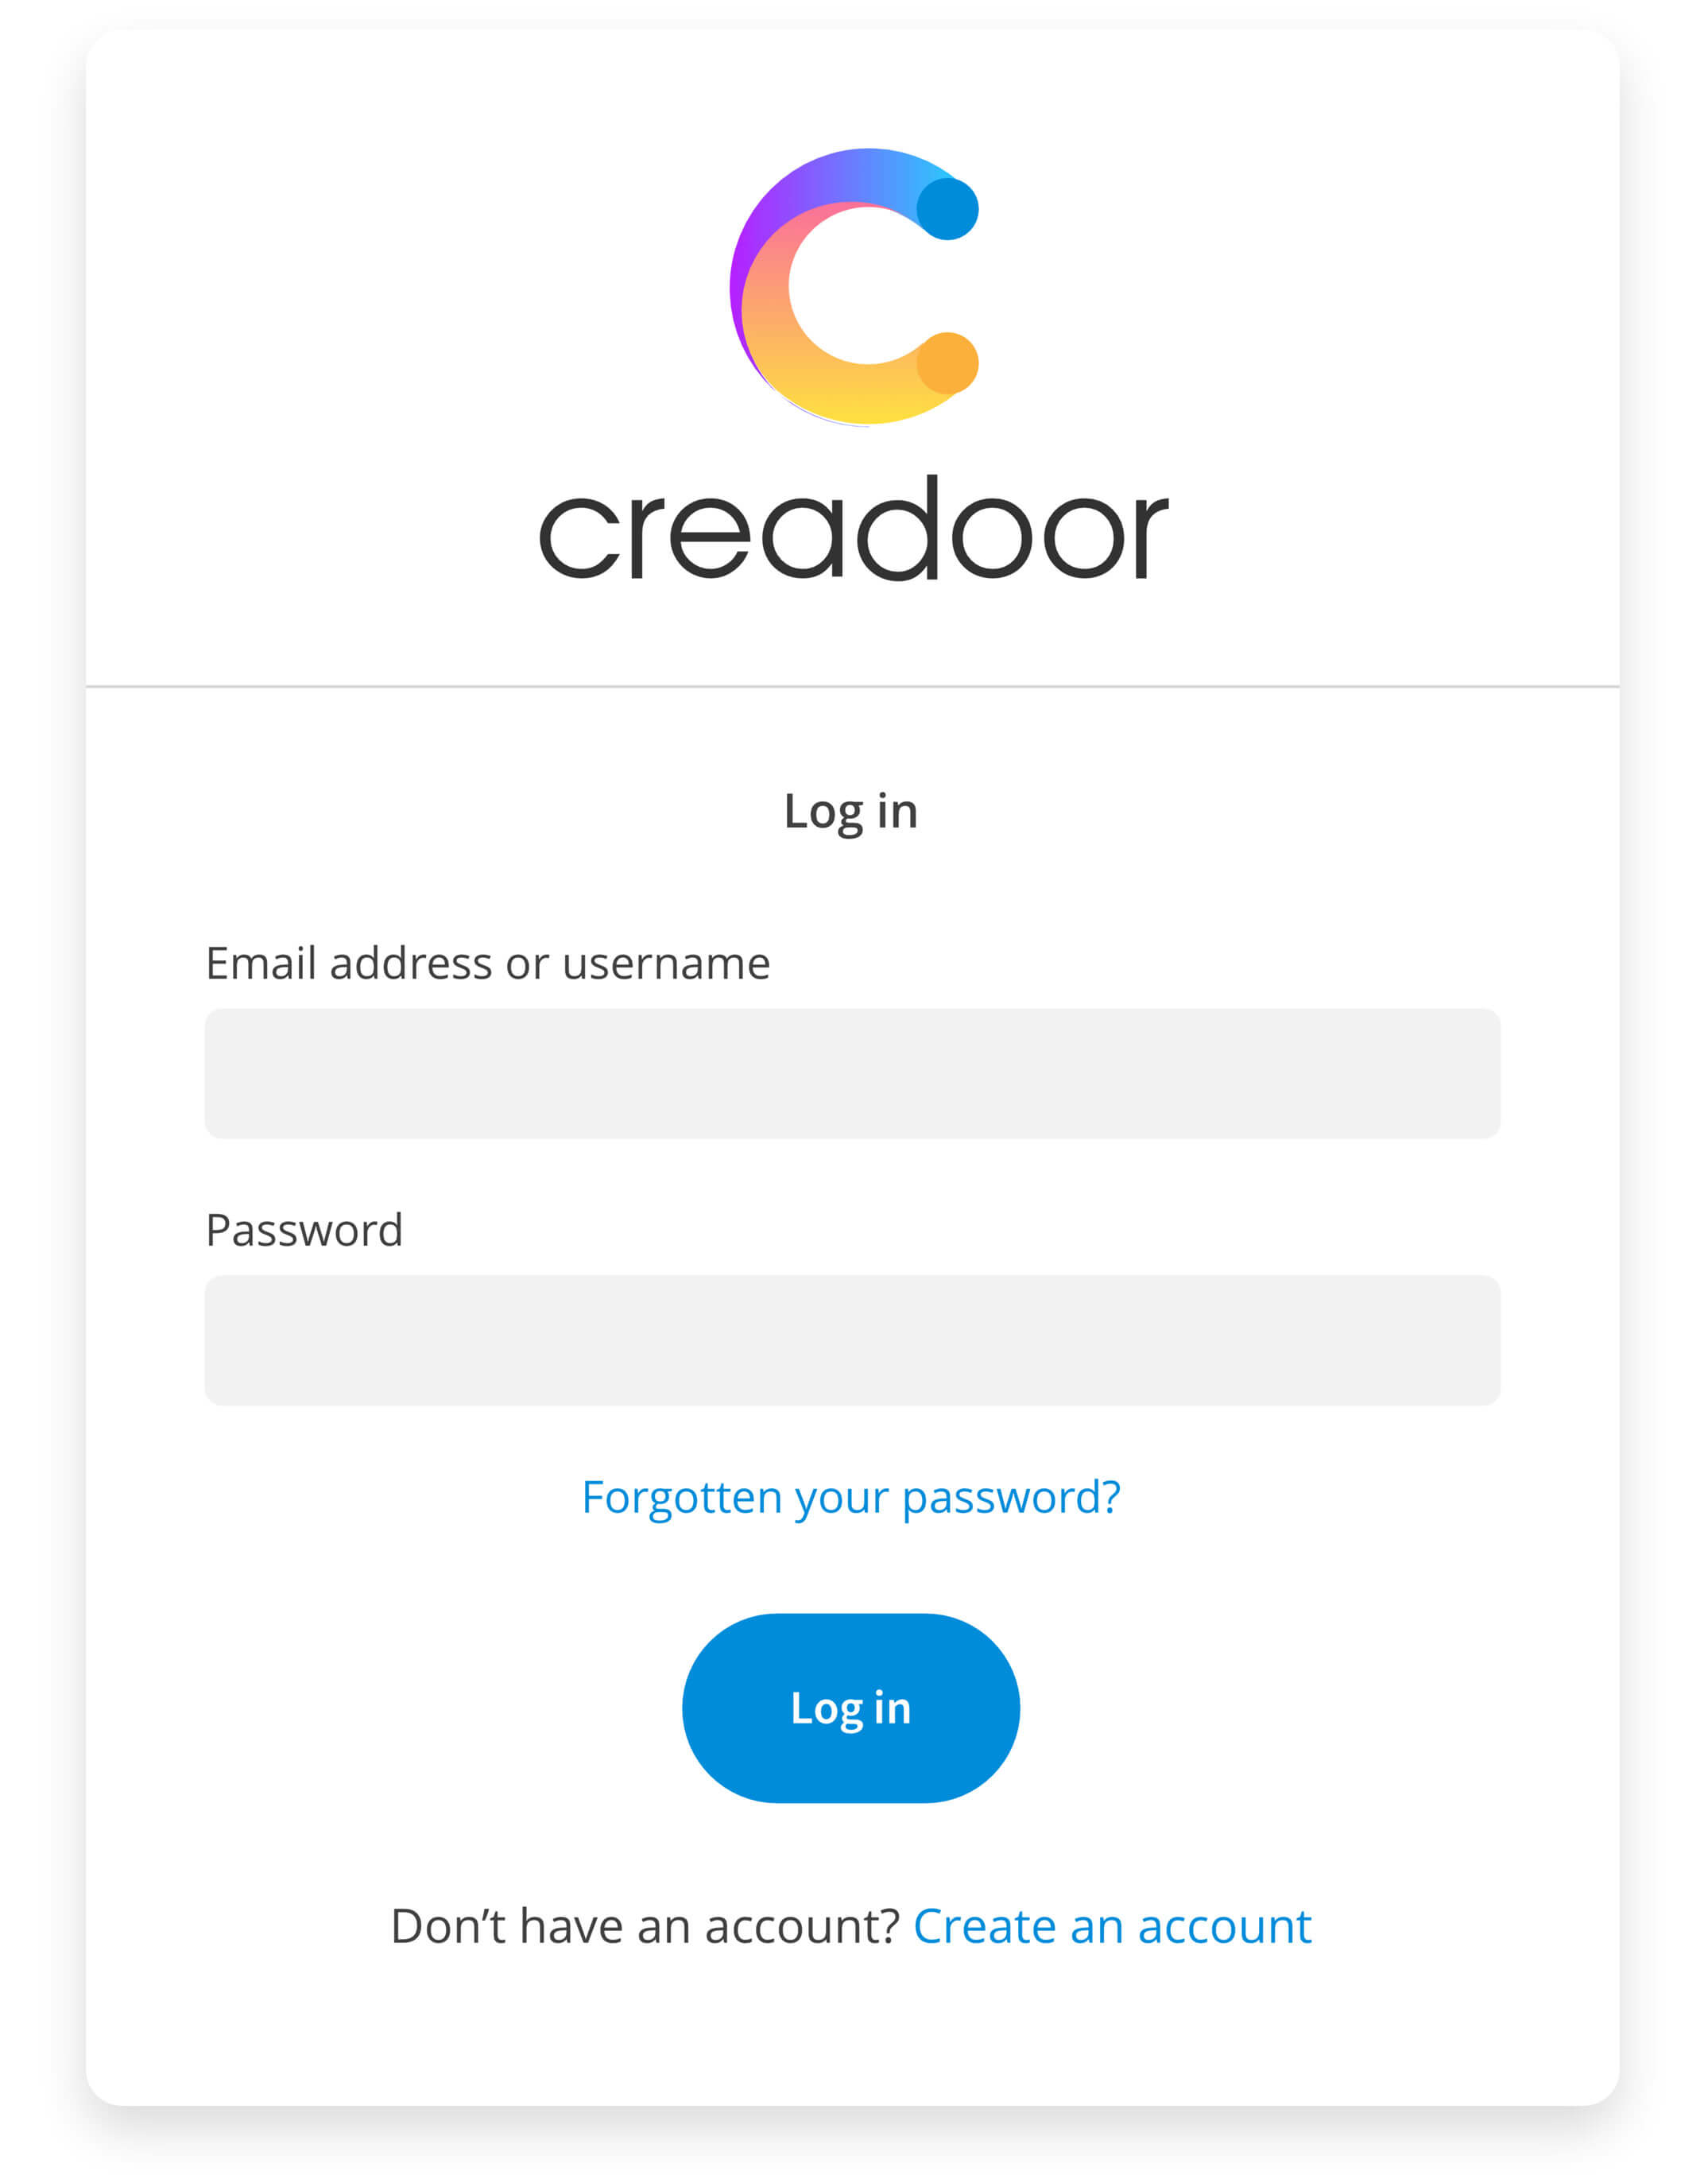 Creadoor - log in screen